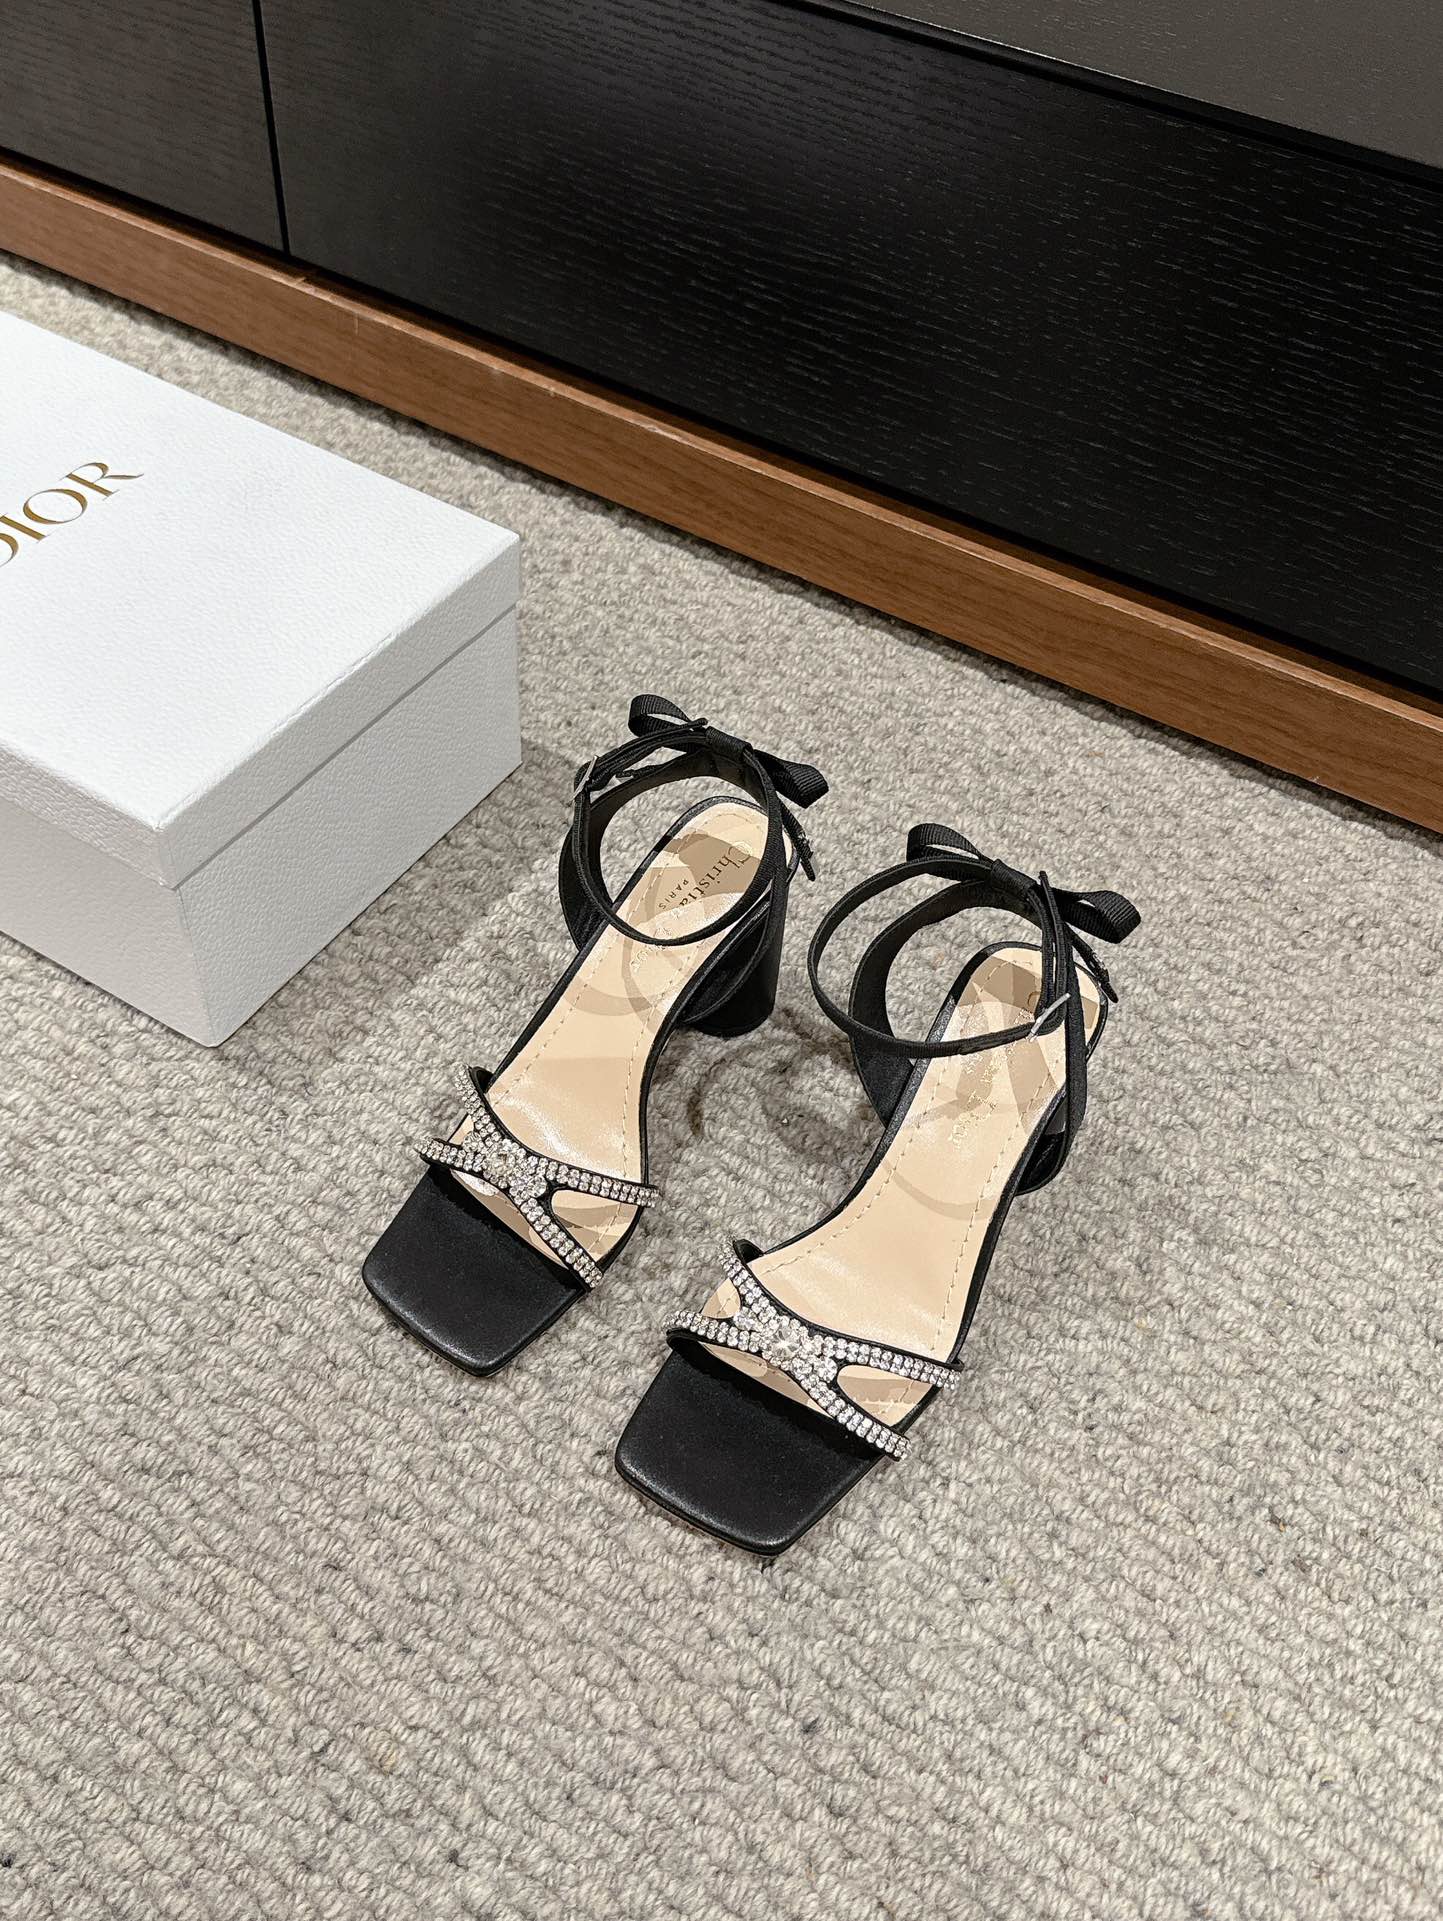 Dior Chaussures Sandales Pantoufles Argent Cuir de vache Genuine Leather Collection printemps – été